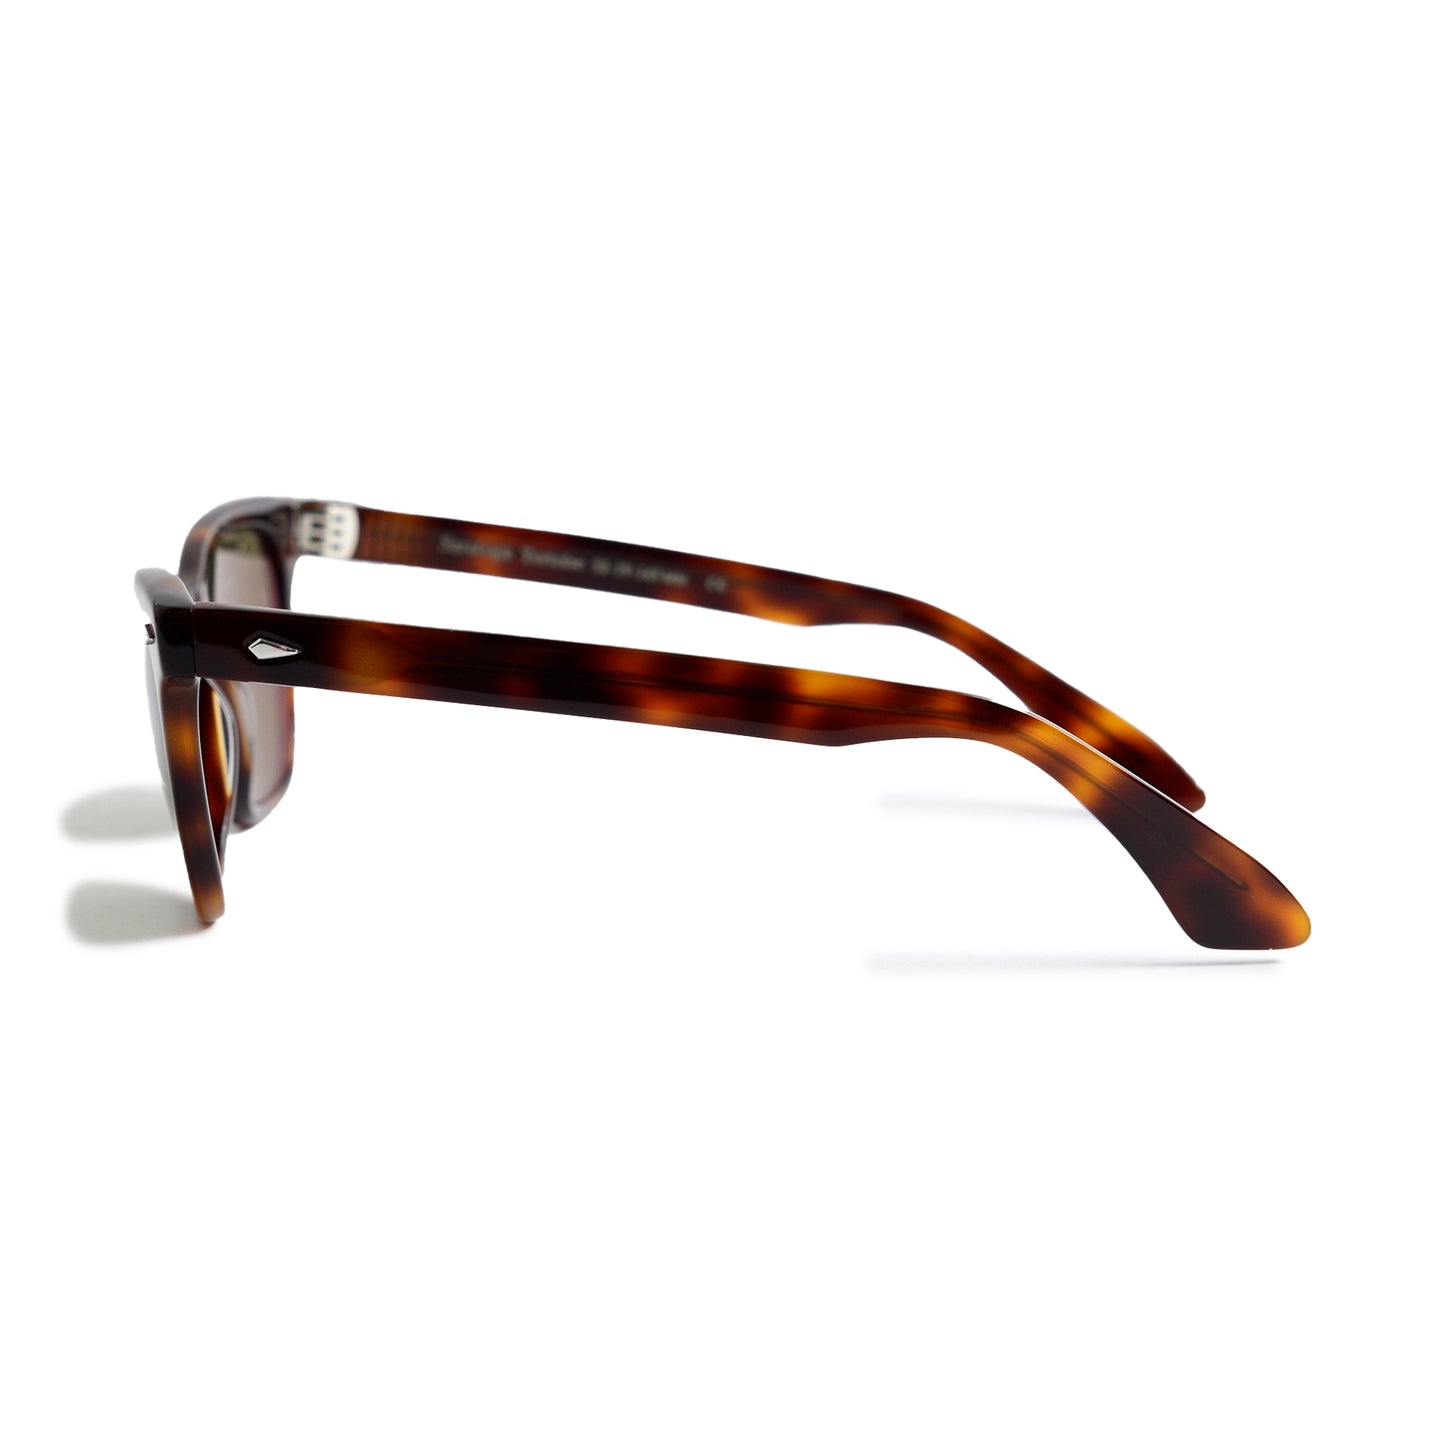 JFK's American Optical Saratoga Sunglasses